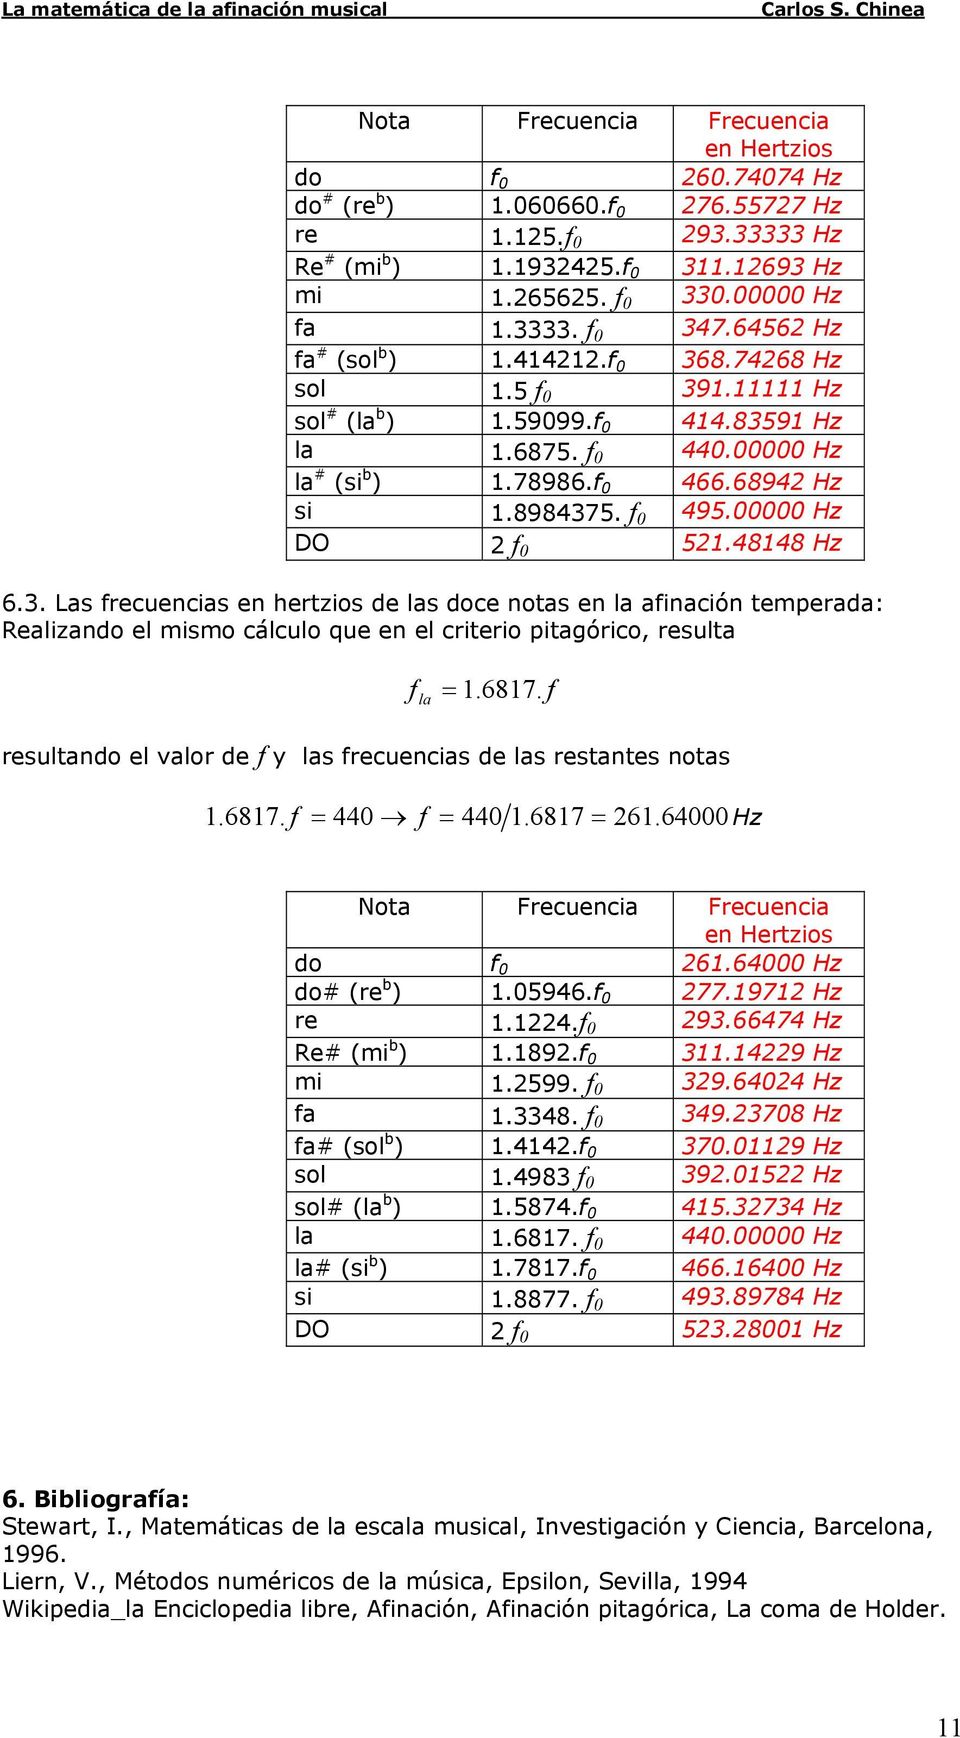 pitagórico, resulta la 687 resultado el valor de y las recuecias de las restates otas 687 687 66 Hz Nota Frecuecia Frecuecia e Hertzios do 66 Hz do# (re b ) 96 7797 Hz re 9667 Hz Re# (mi b ) 89 9 Hz